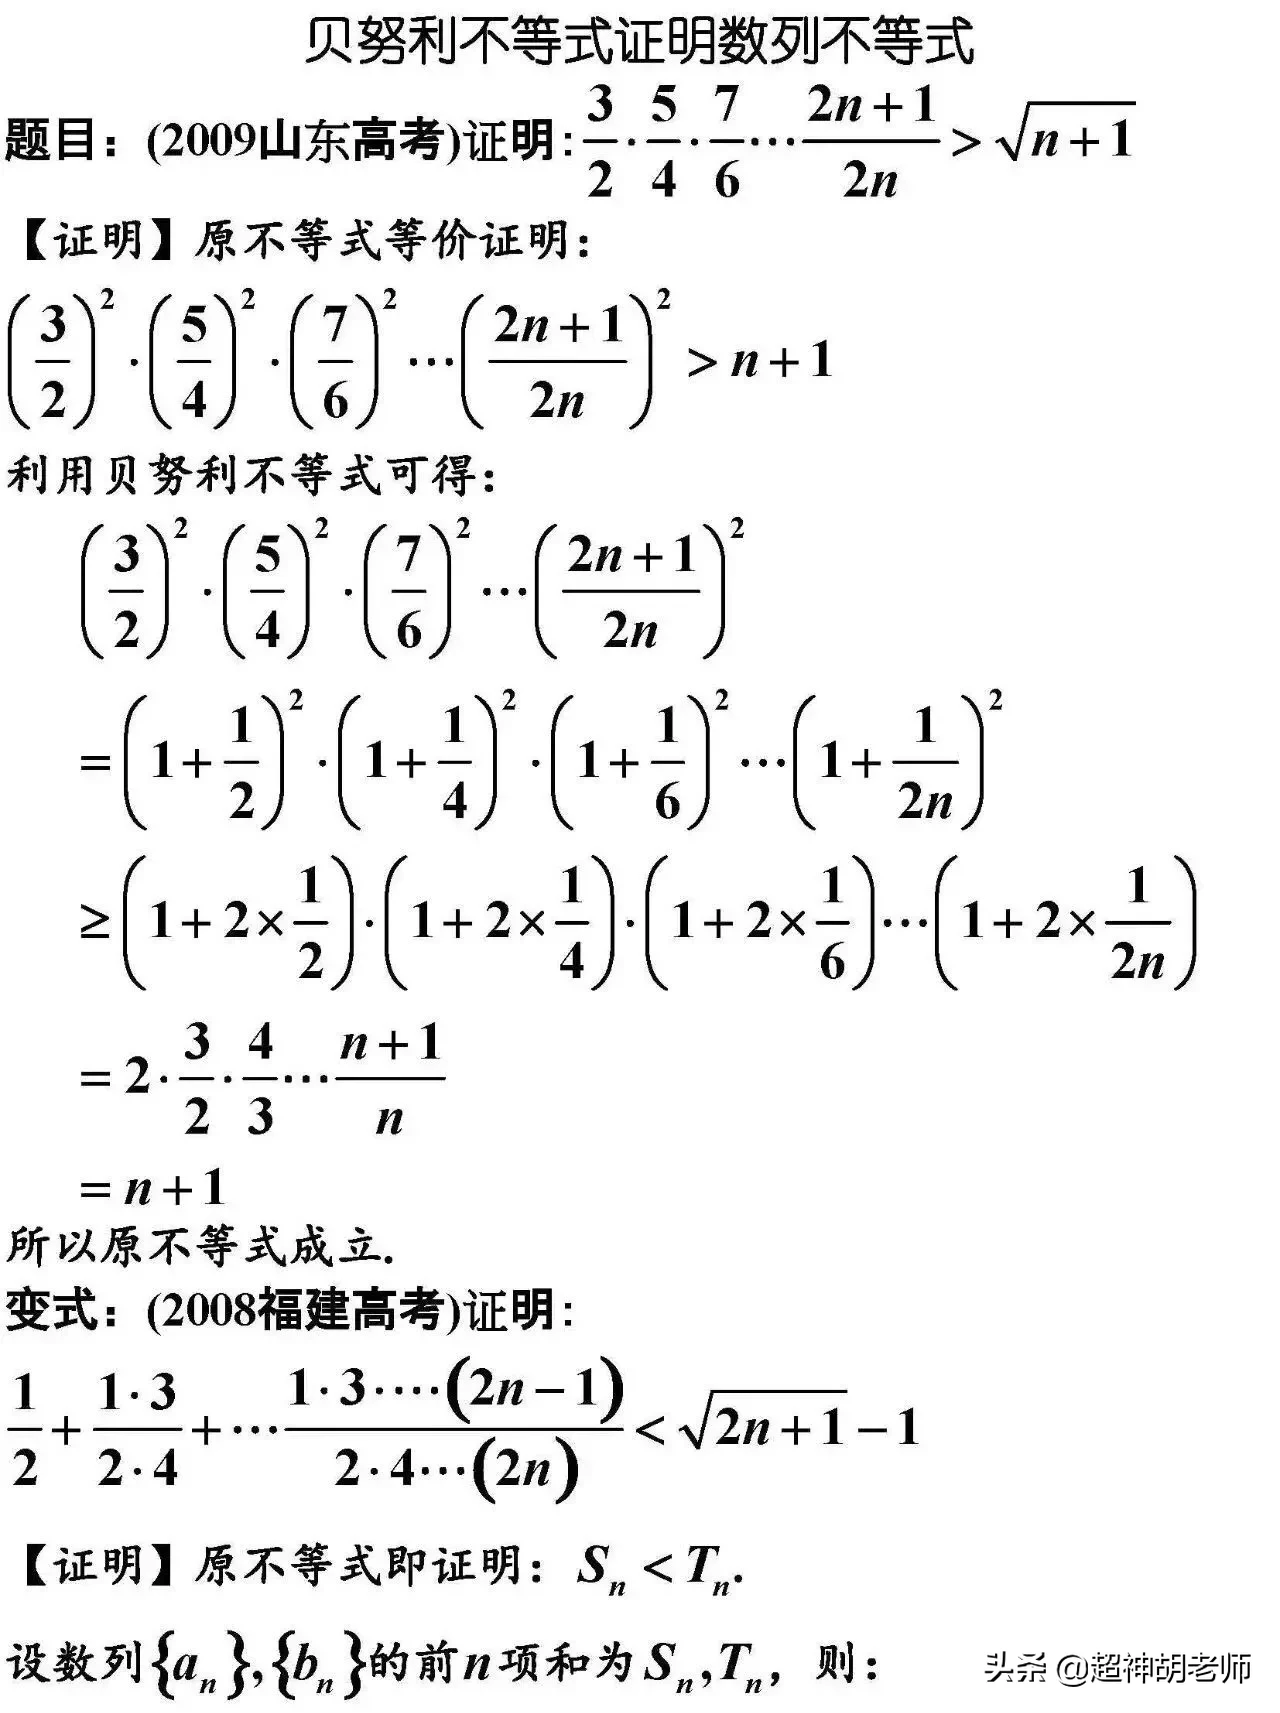 伯努利定理及其数学表达式（伯努利微分方程的求解）